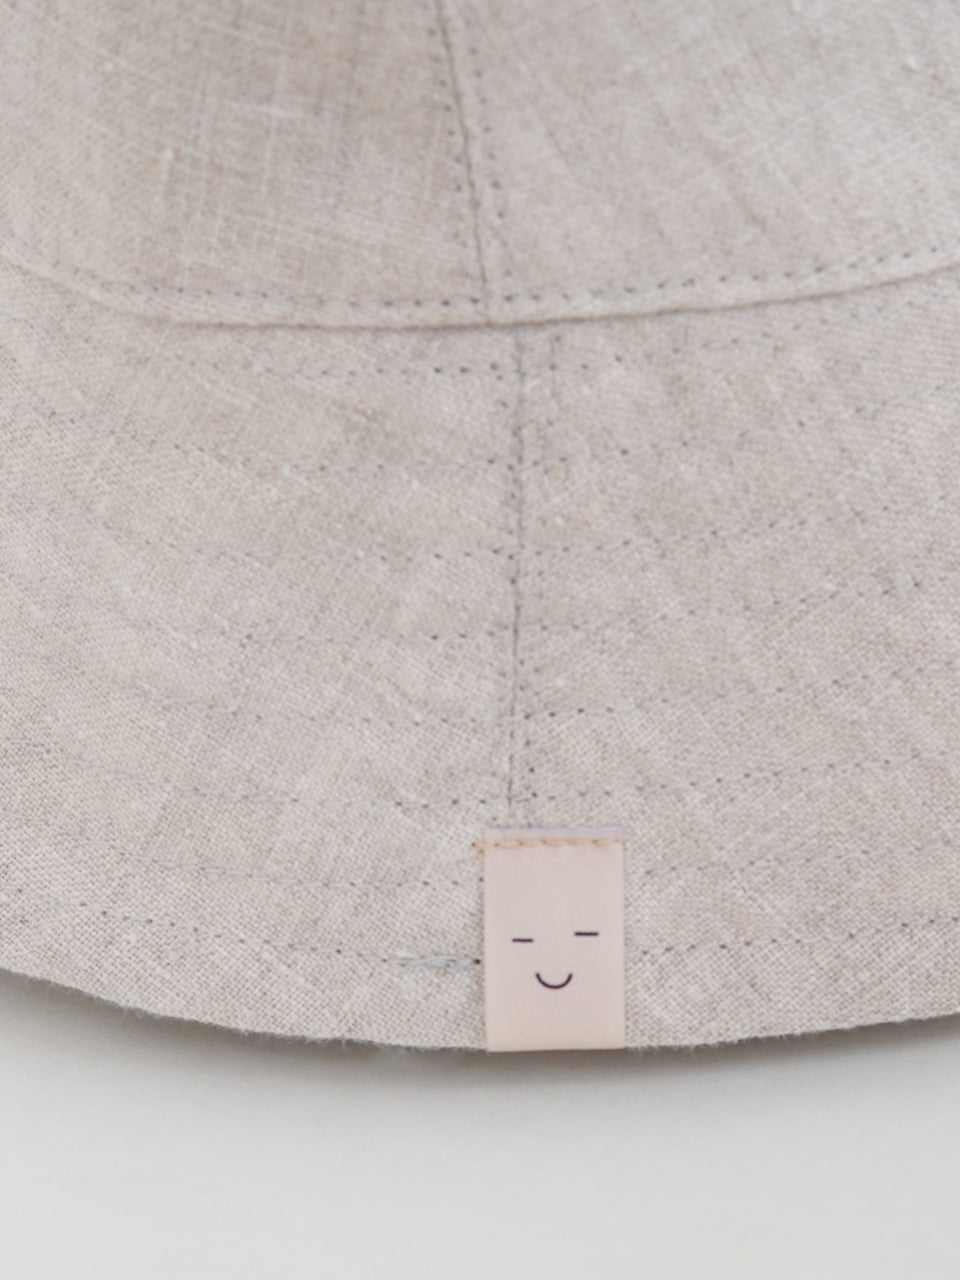 Linen Adults Bucket Hat